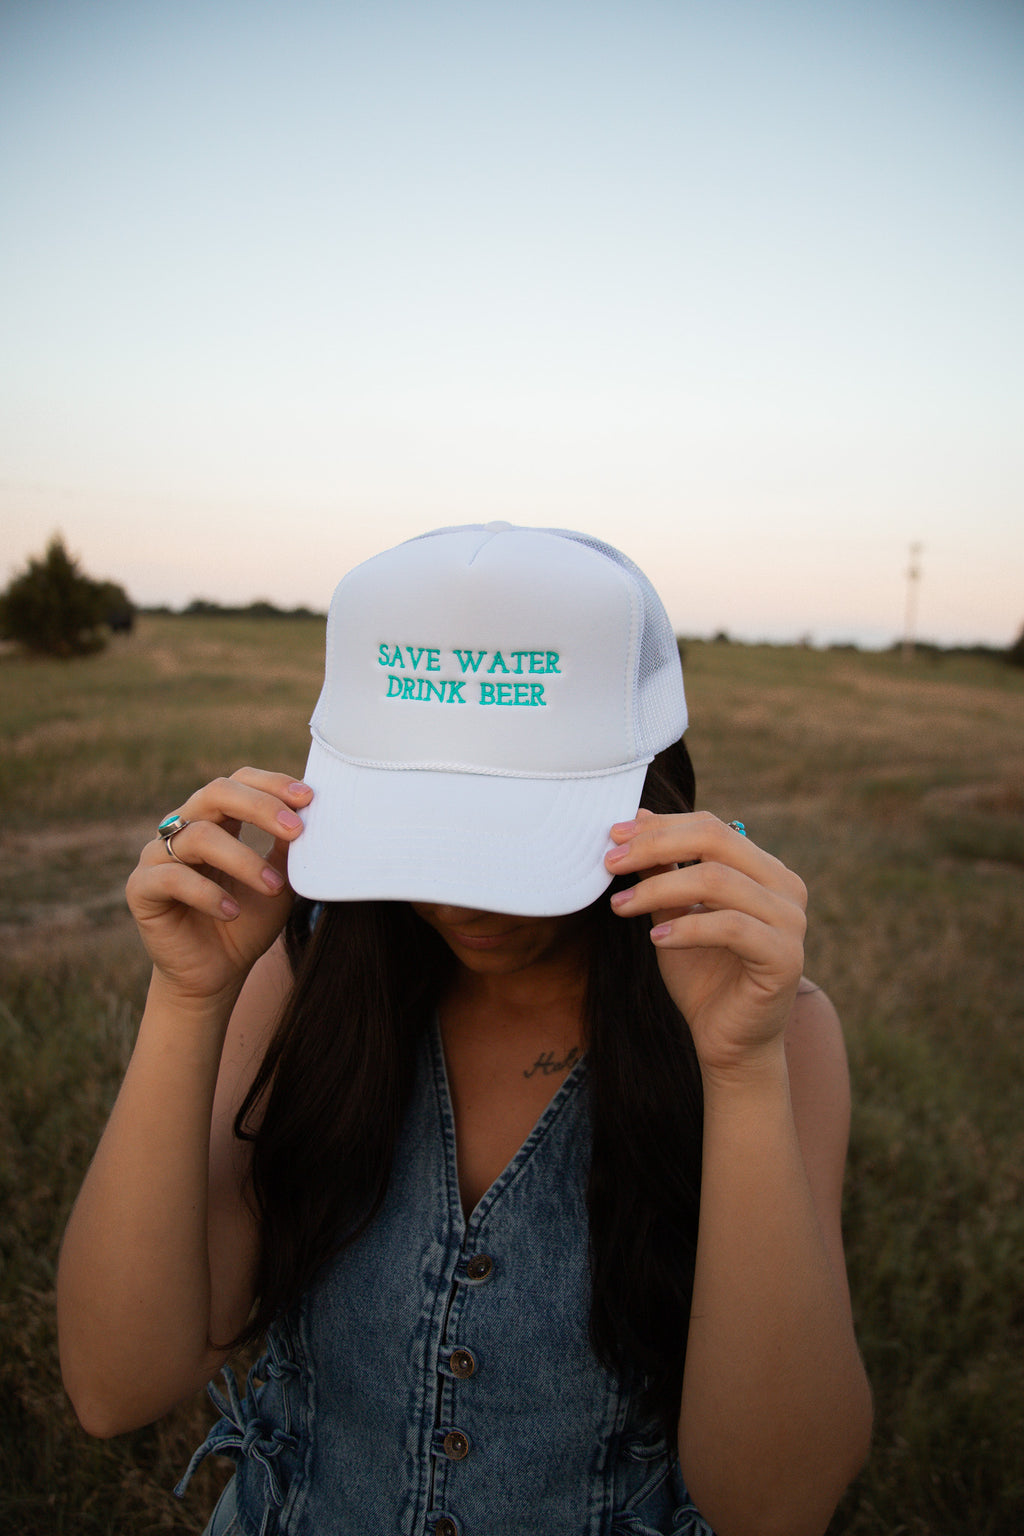 Save Water Drink Beer Trucker Hat - 1 week TAT